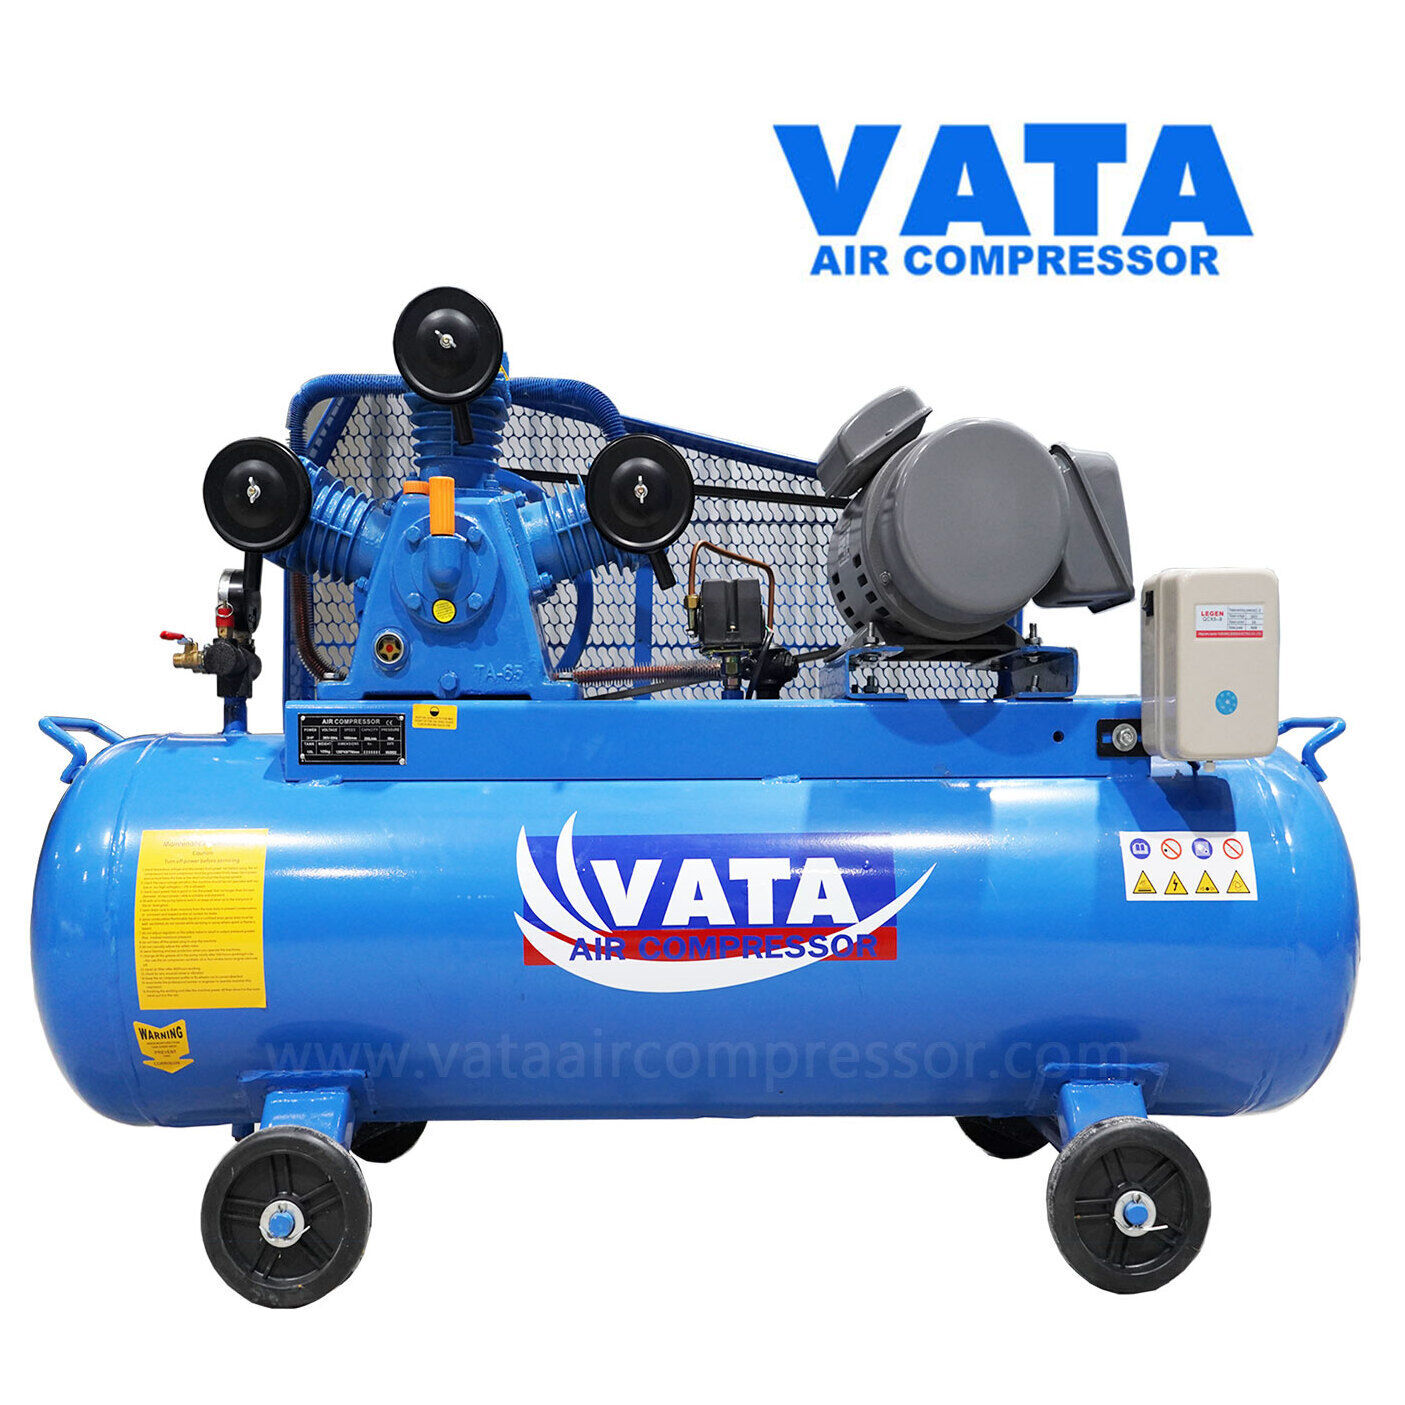 จำหน่ายปั๊มลมลูกสูบวาตะ VATA Two Stage air compressor ปั๊มลมวาตะ อะไหล่ปั๊มลมวาตะ เริ่มต้นที่ขนาด 1 แรงม้า ถึง 15 แรงม้า มีของพร้อมจัดส่ง รับประกันสินค้า 1 ปี